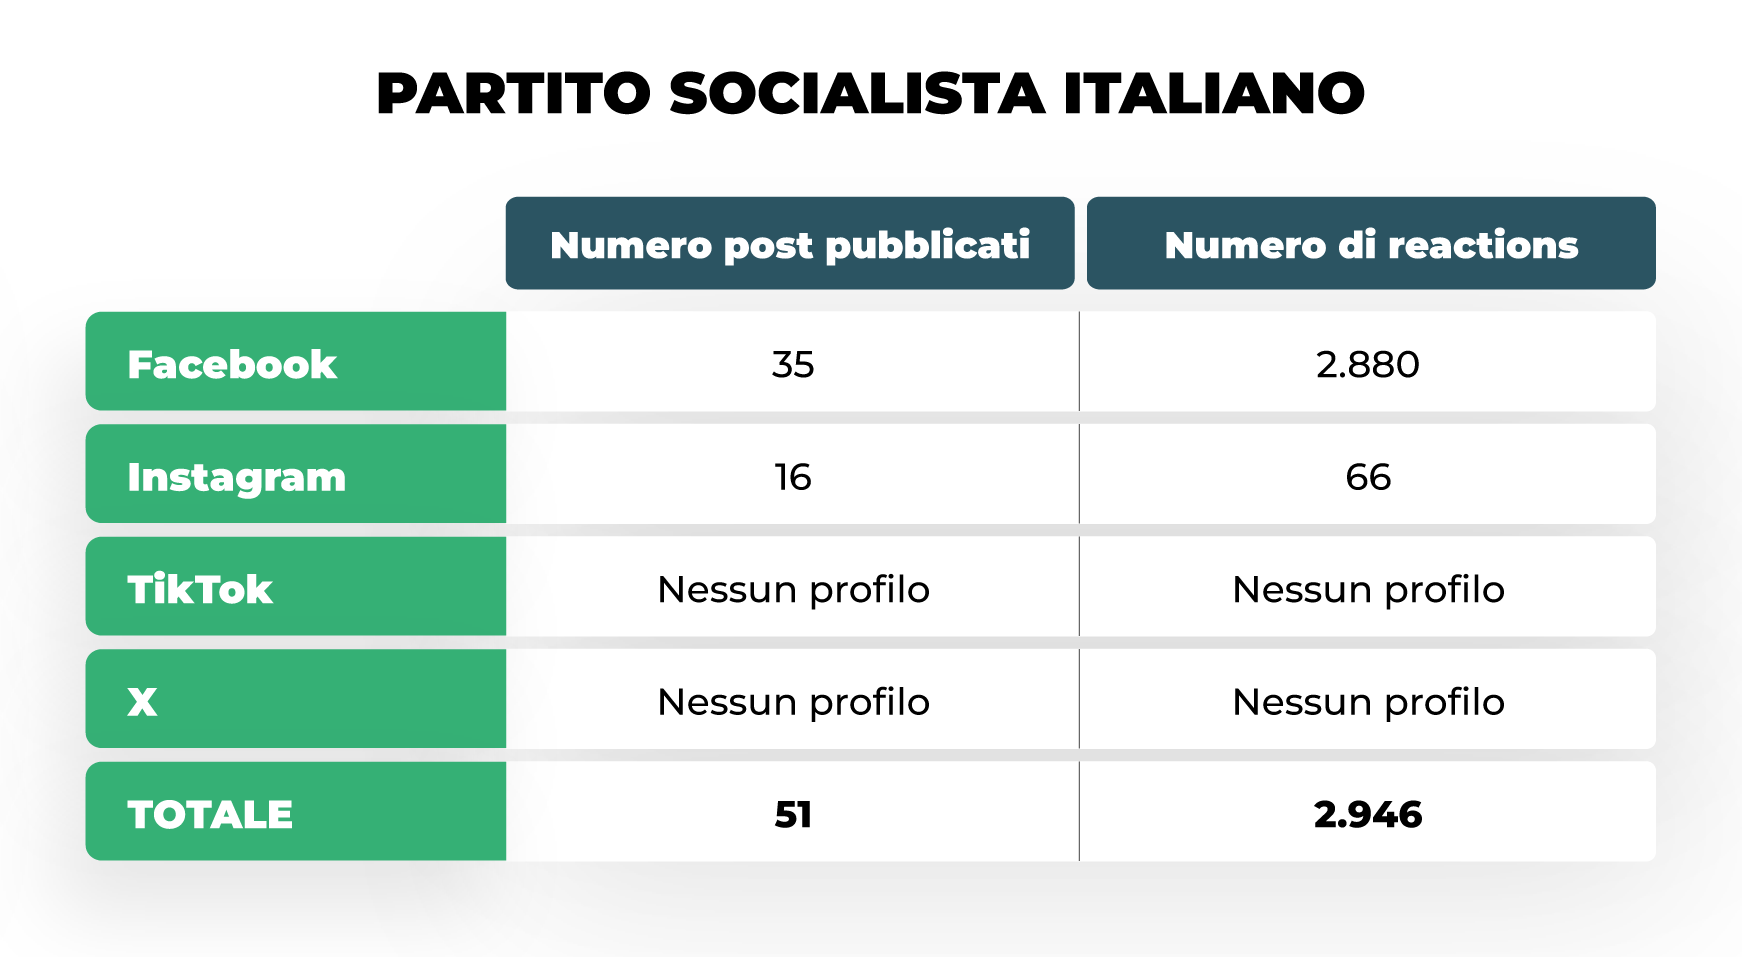 La campagna elettorale per le Europee del Partito Socialista Italiano